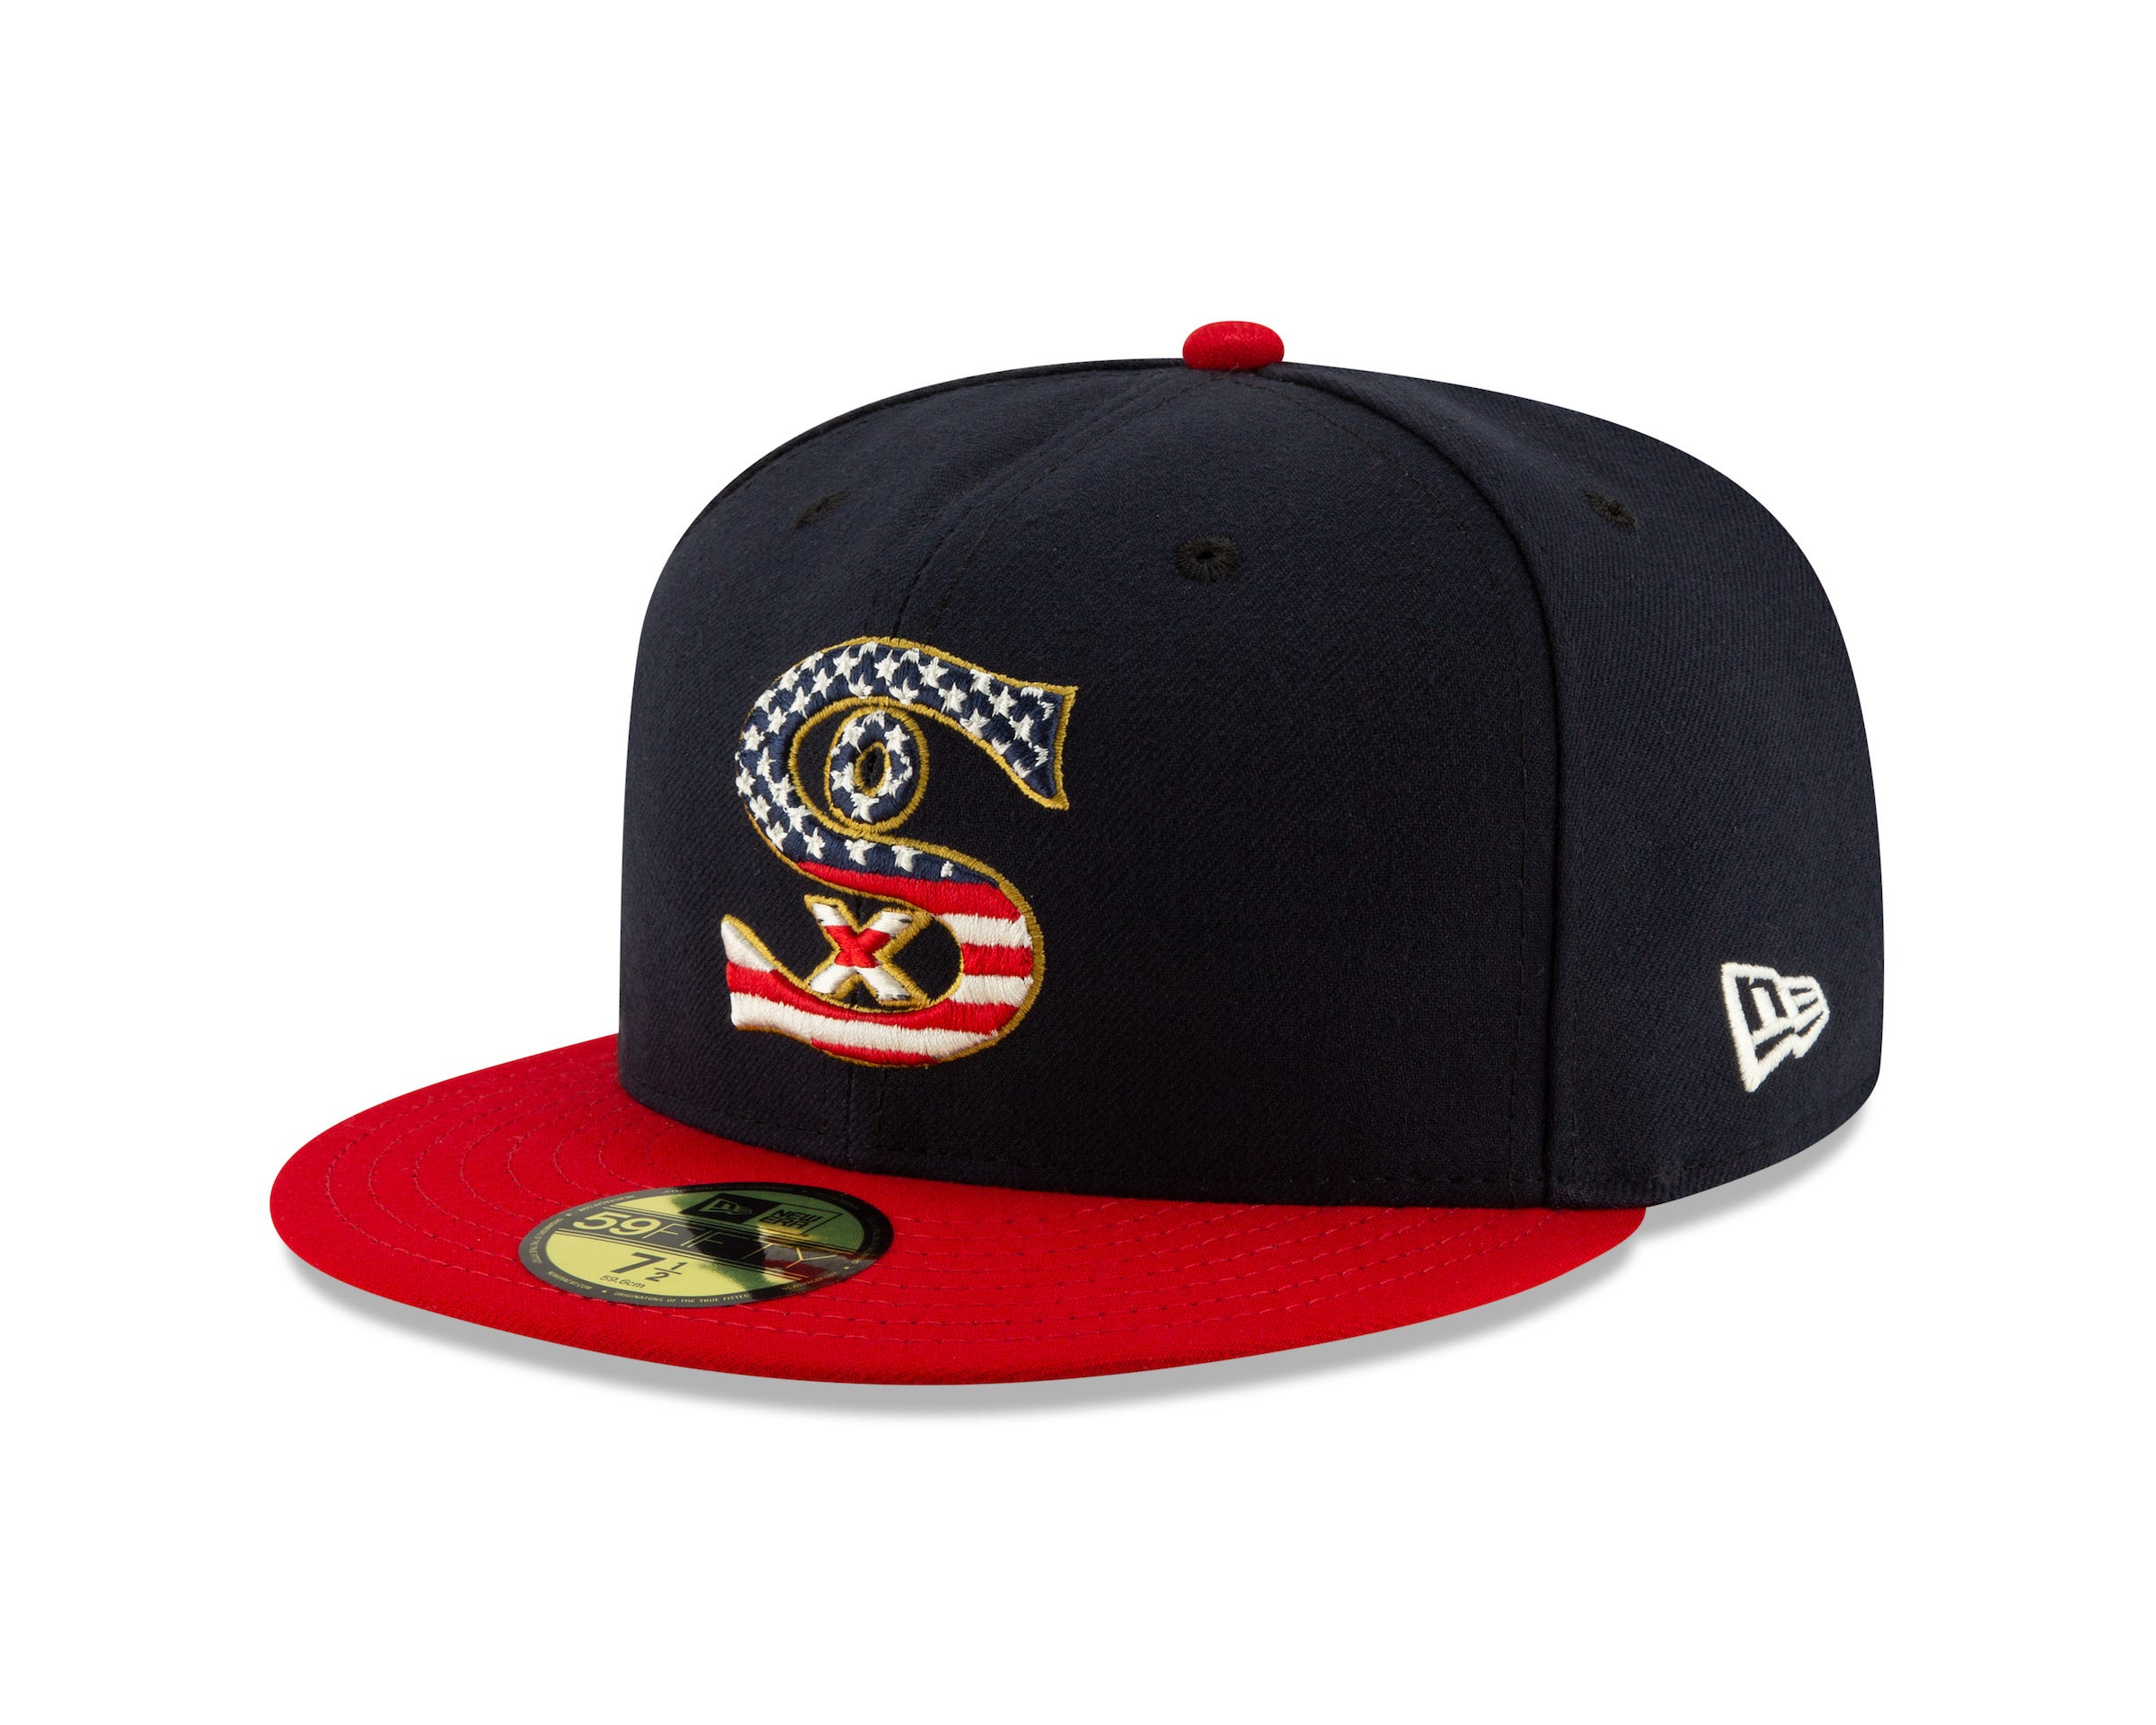 MLB teams wear patriotic uniforms for July 4